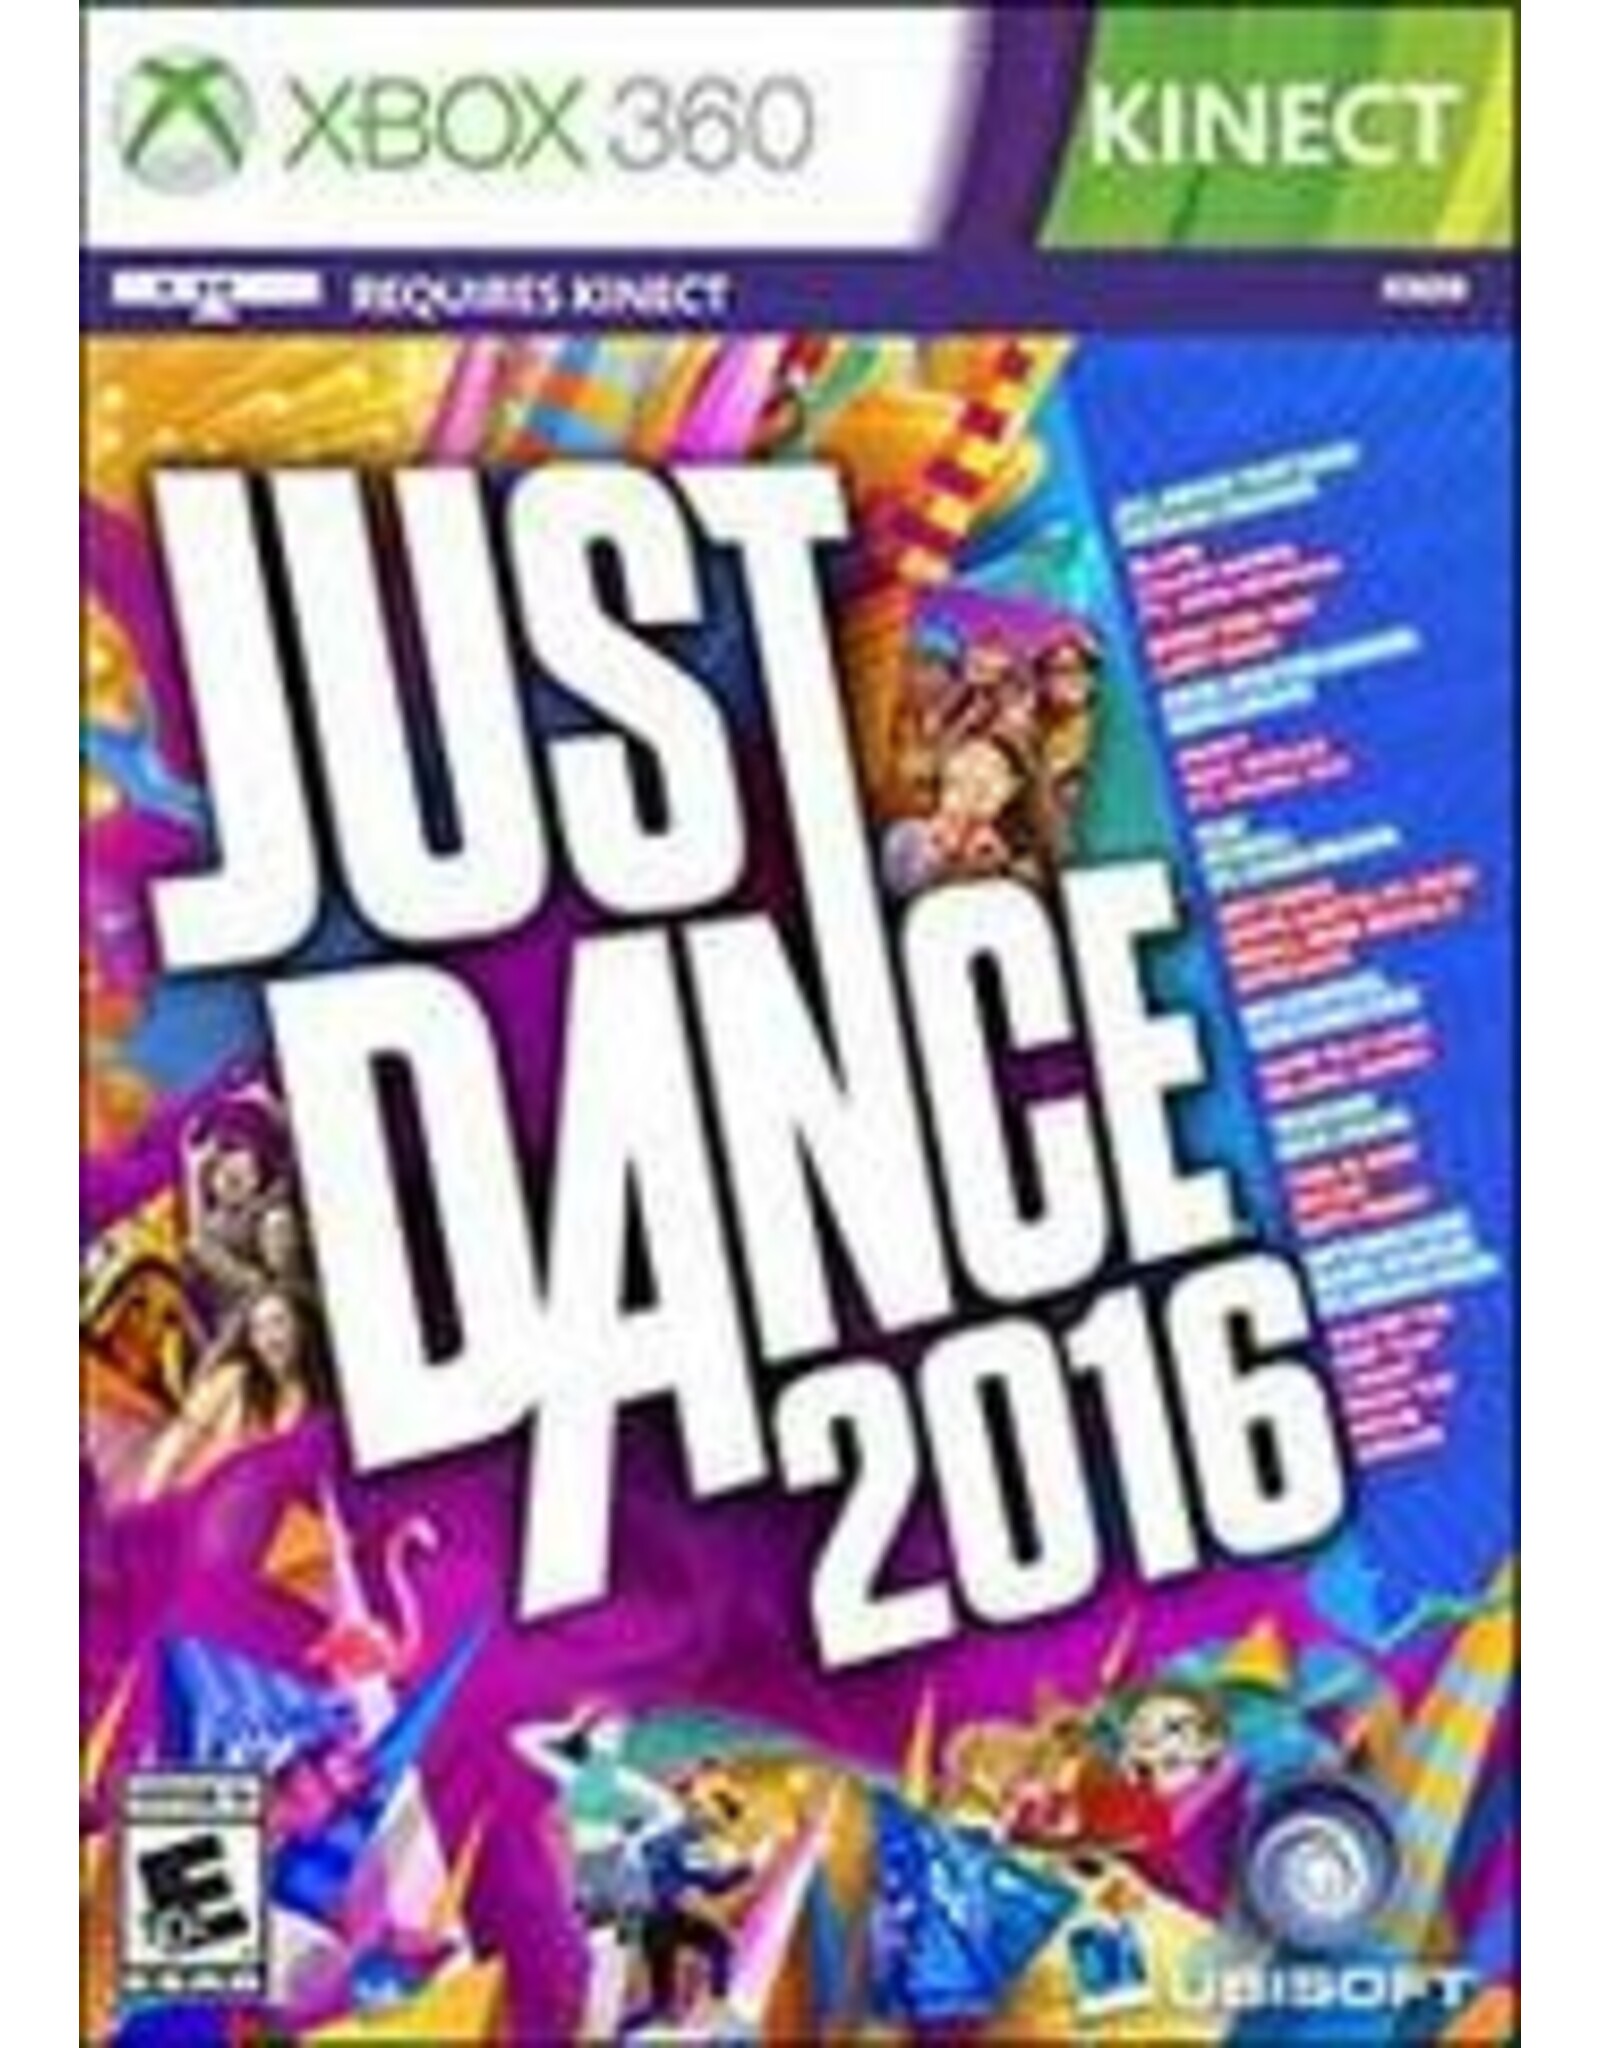 Xbox 360 Just Dance 2016 (CiB)